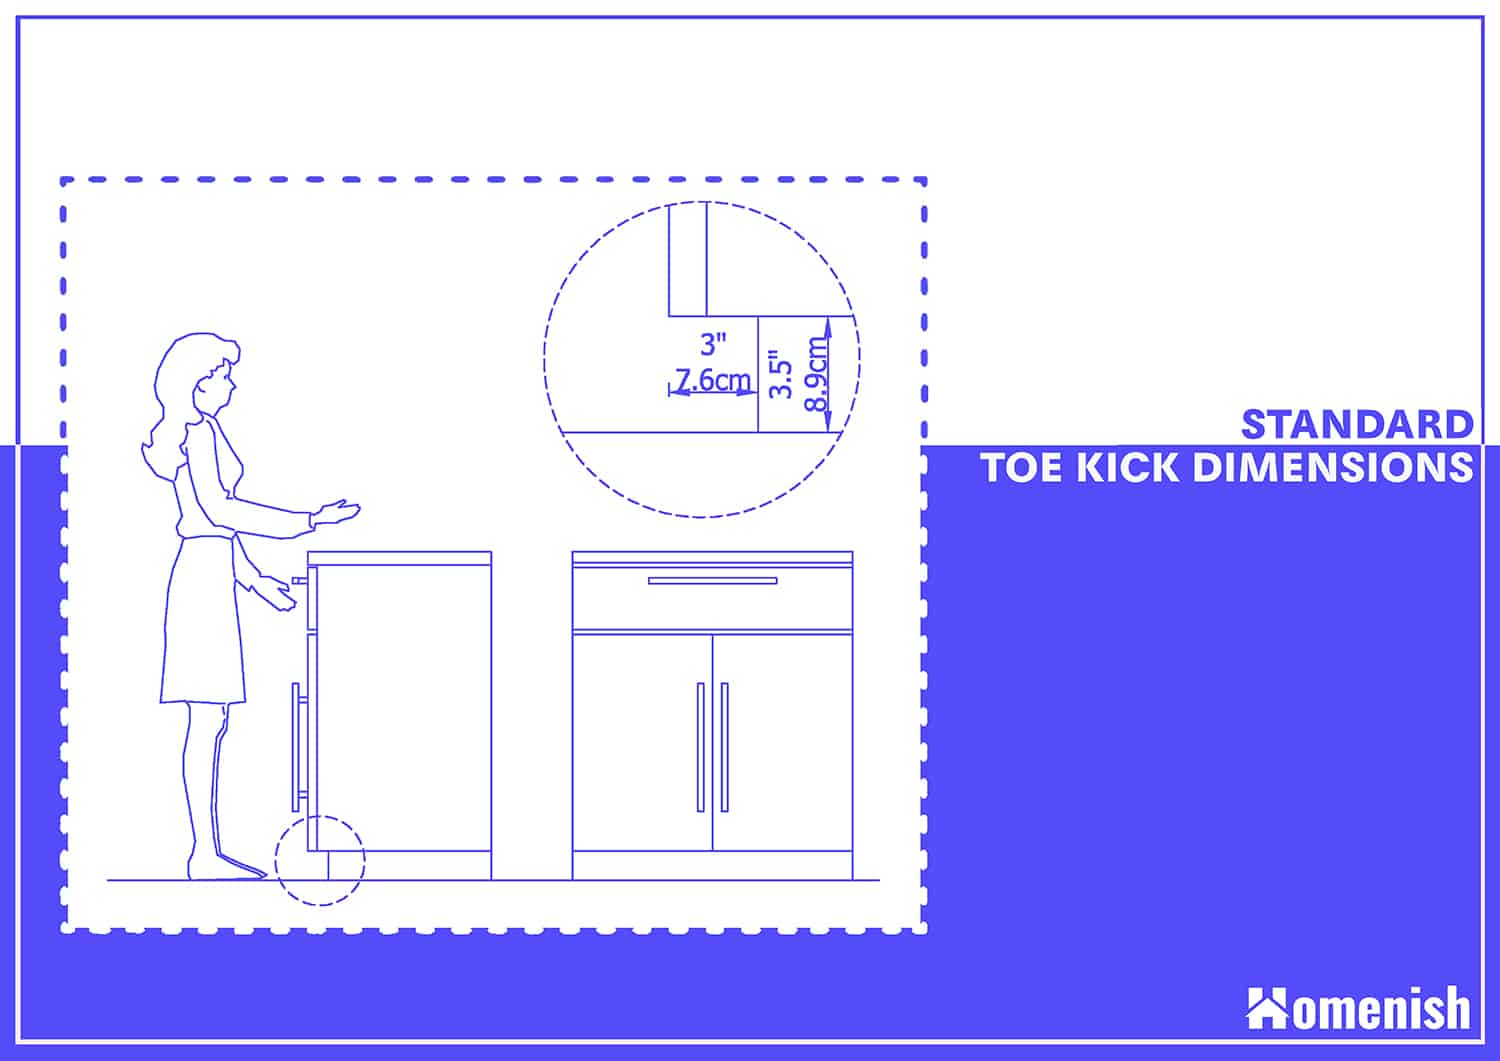 Standard Toe Kick Dimensions